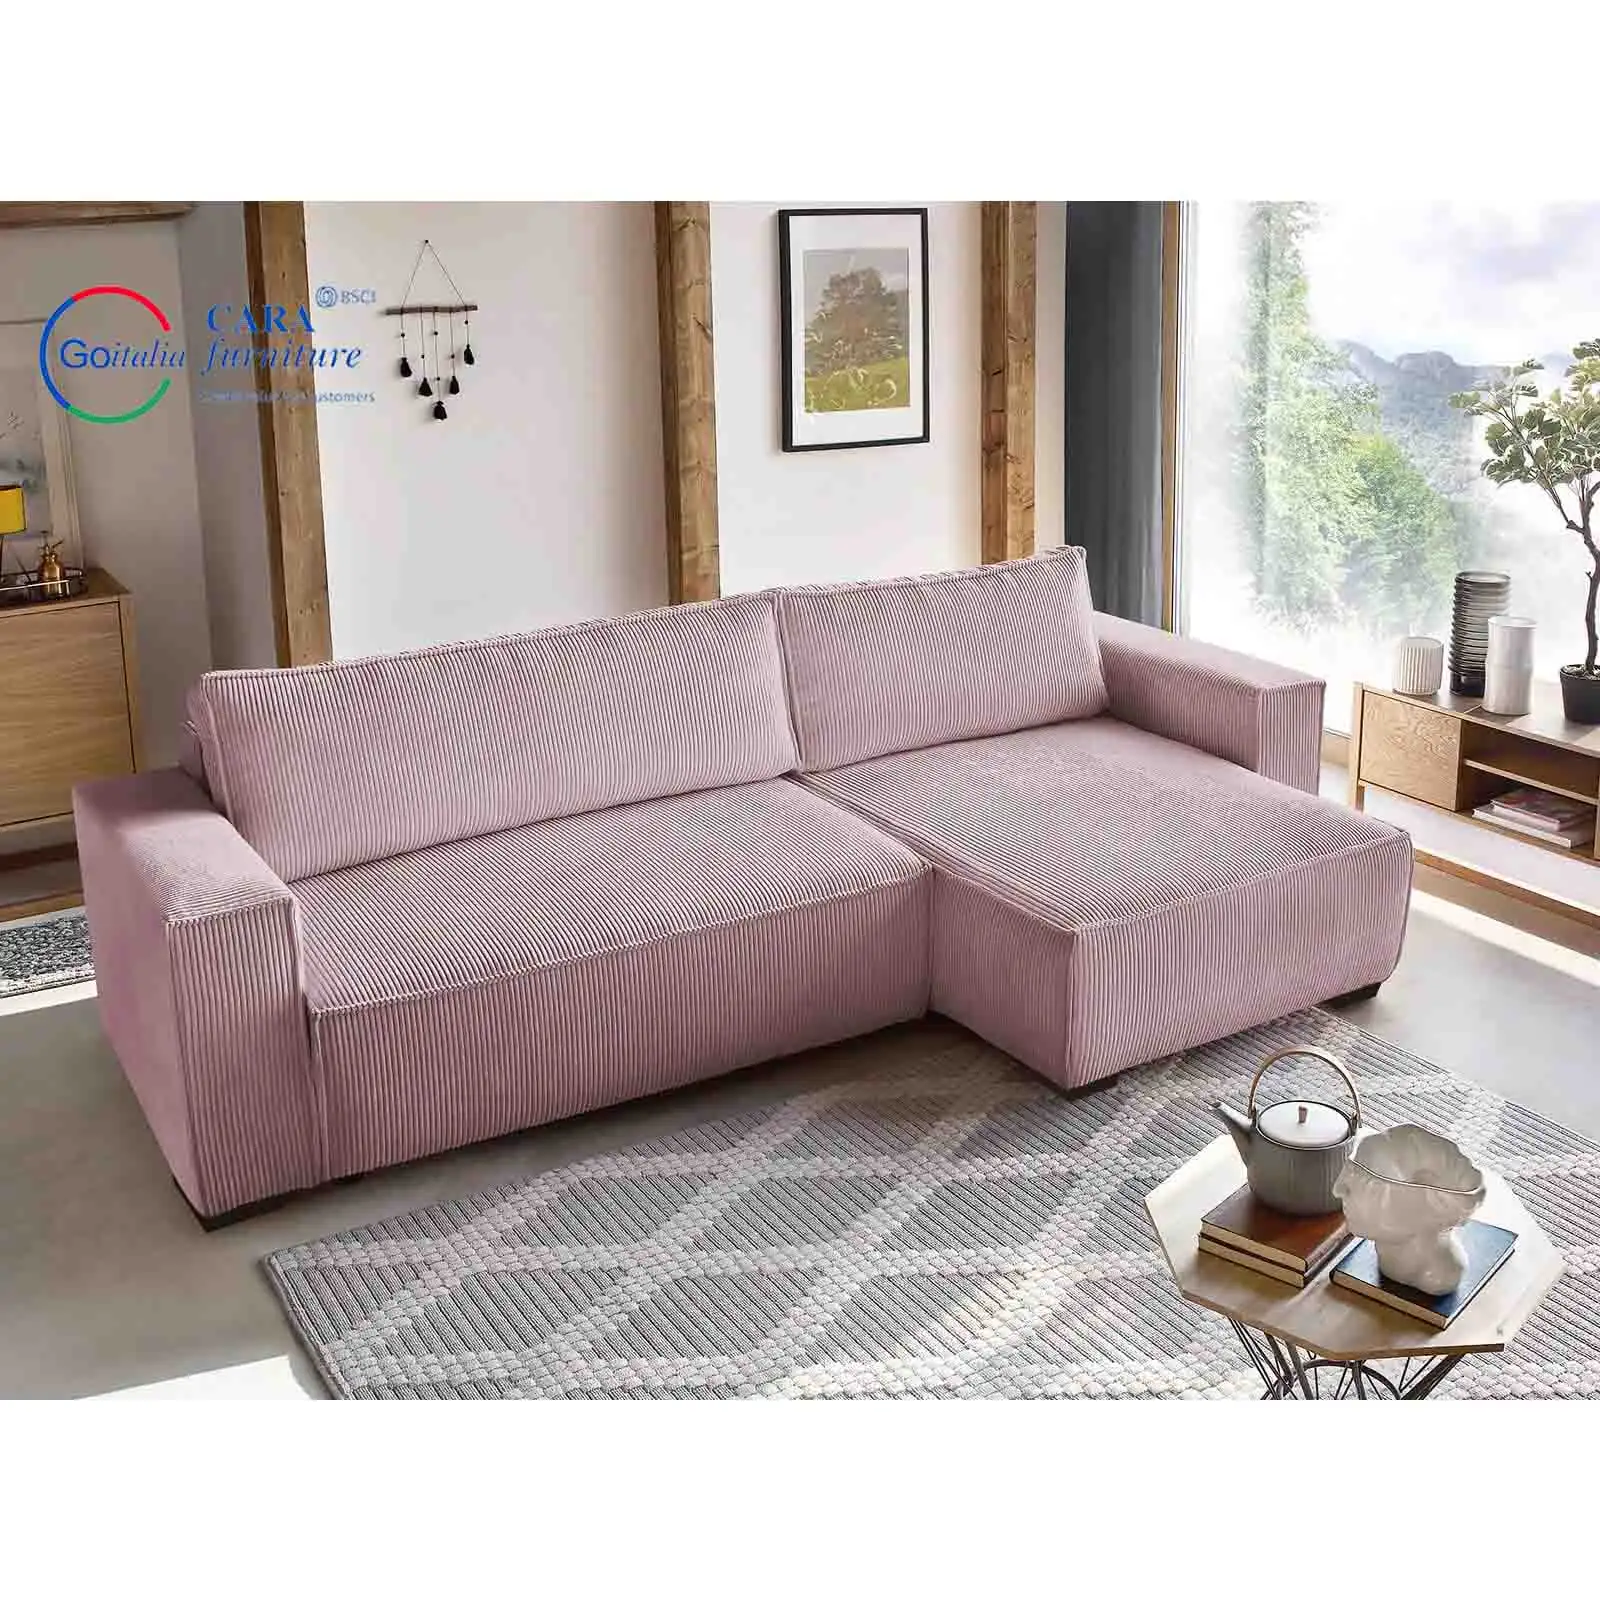 Venda quente Mobiliário de sala de estar Sofá-cama de canto moderno confortável com esponja elástica alta rosa